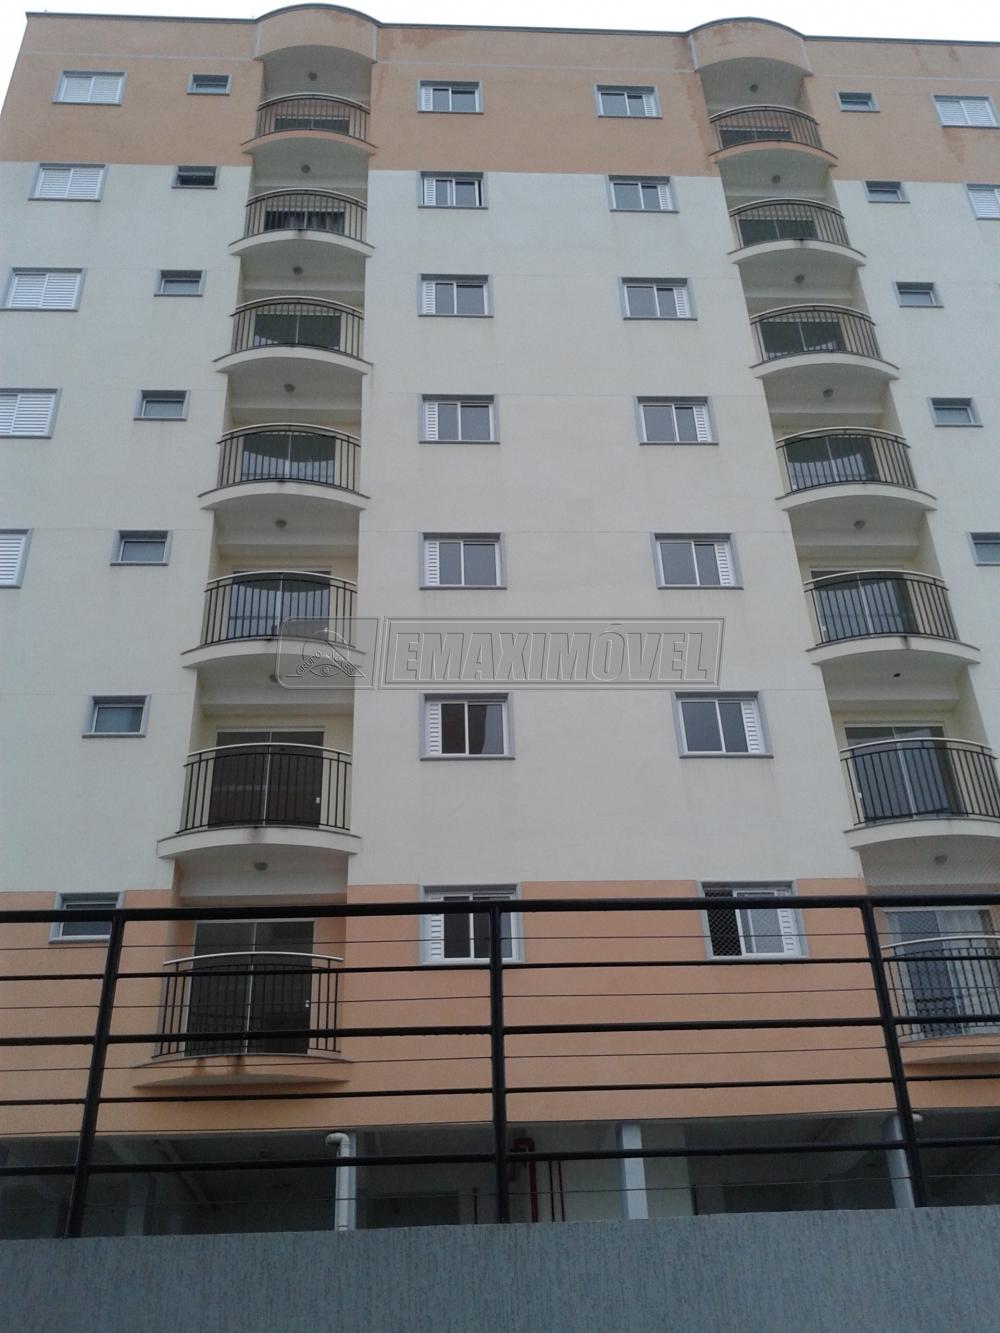 Comprar Apartamento / Cobertura em Sorocaba R$ 271.000,00 - Foto 1